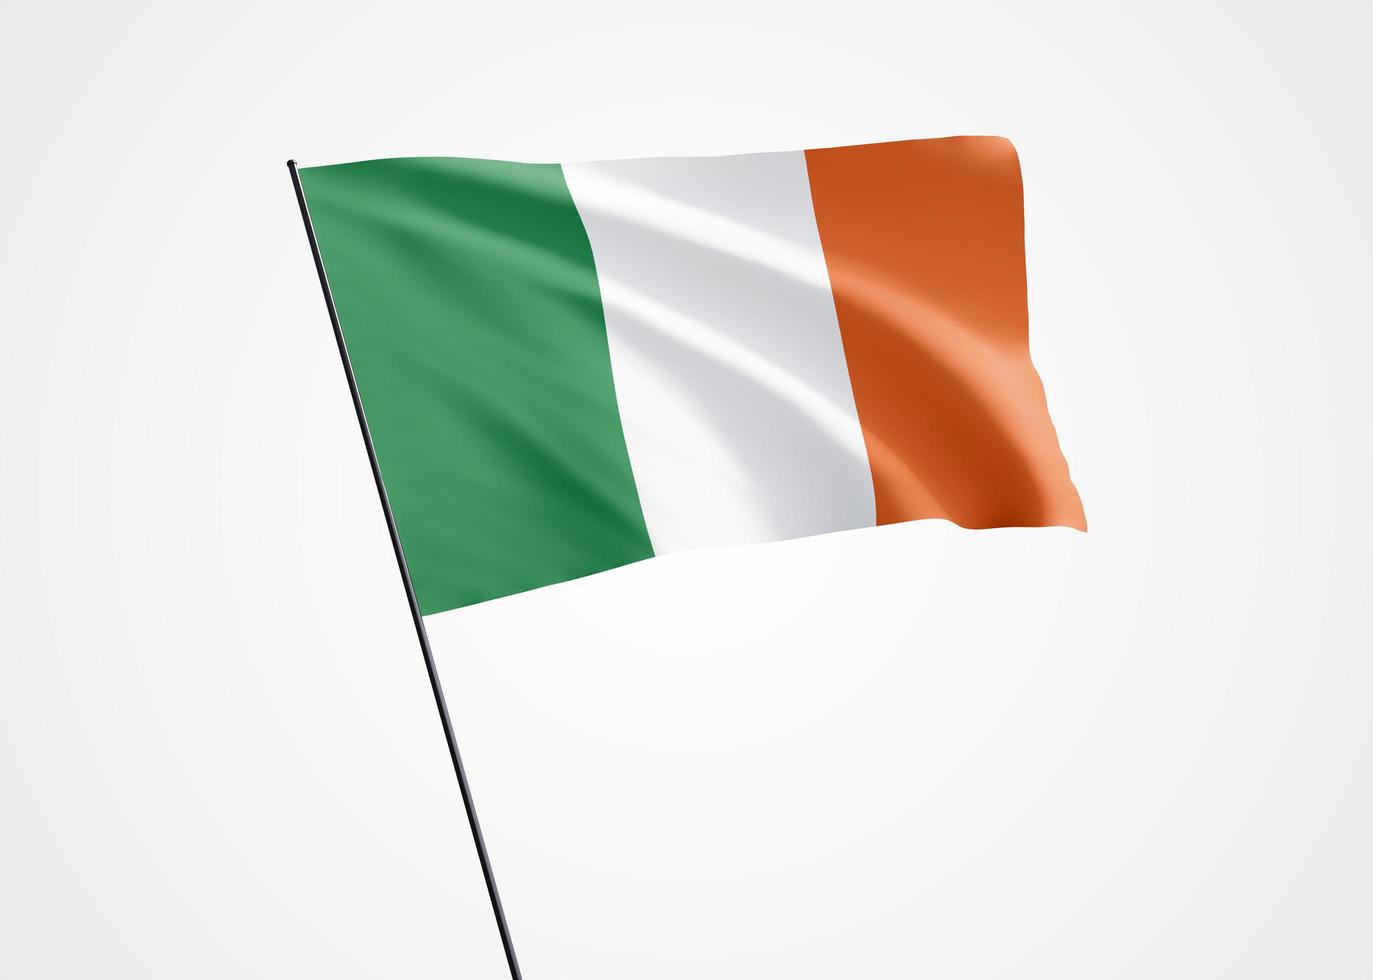 Irland-Flagge hoch fliegen im weißen Hintergrund isoliert. 24. April Unabhängigkeitstag der Republik Irland. Weltnationalflaggensammlung Weltnationalflaggensammlung foto